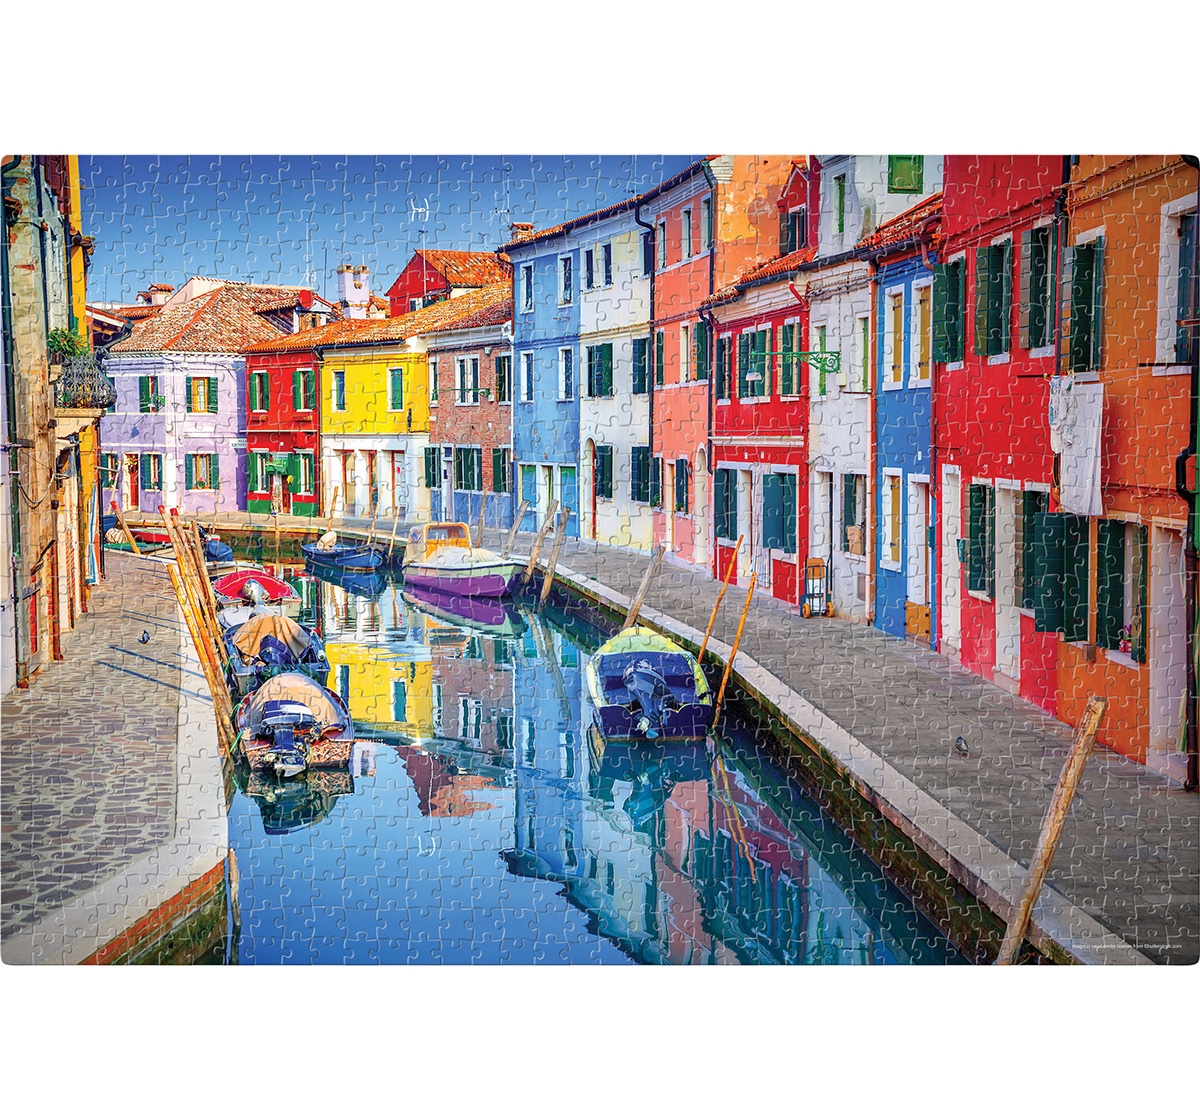 Frank | Frank Burano, Venice, Italy Puzzle 1000 Pieces, 14Y+ 2